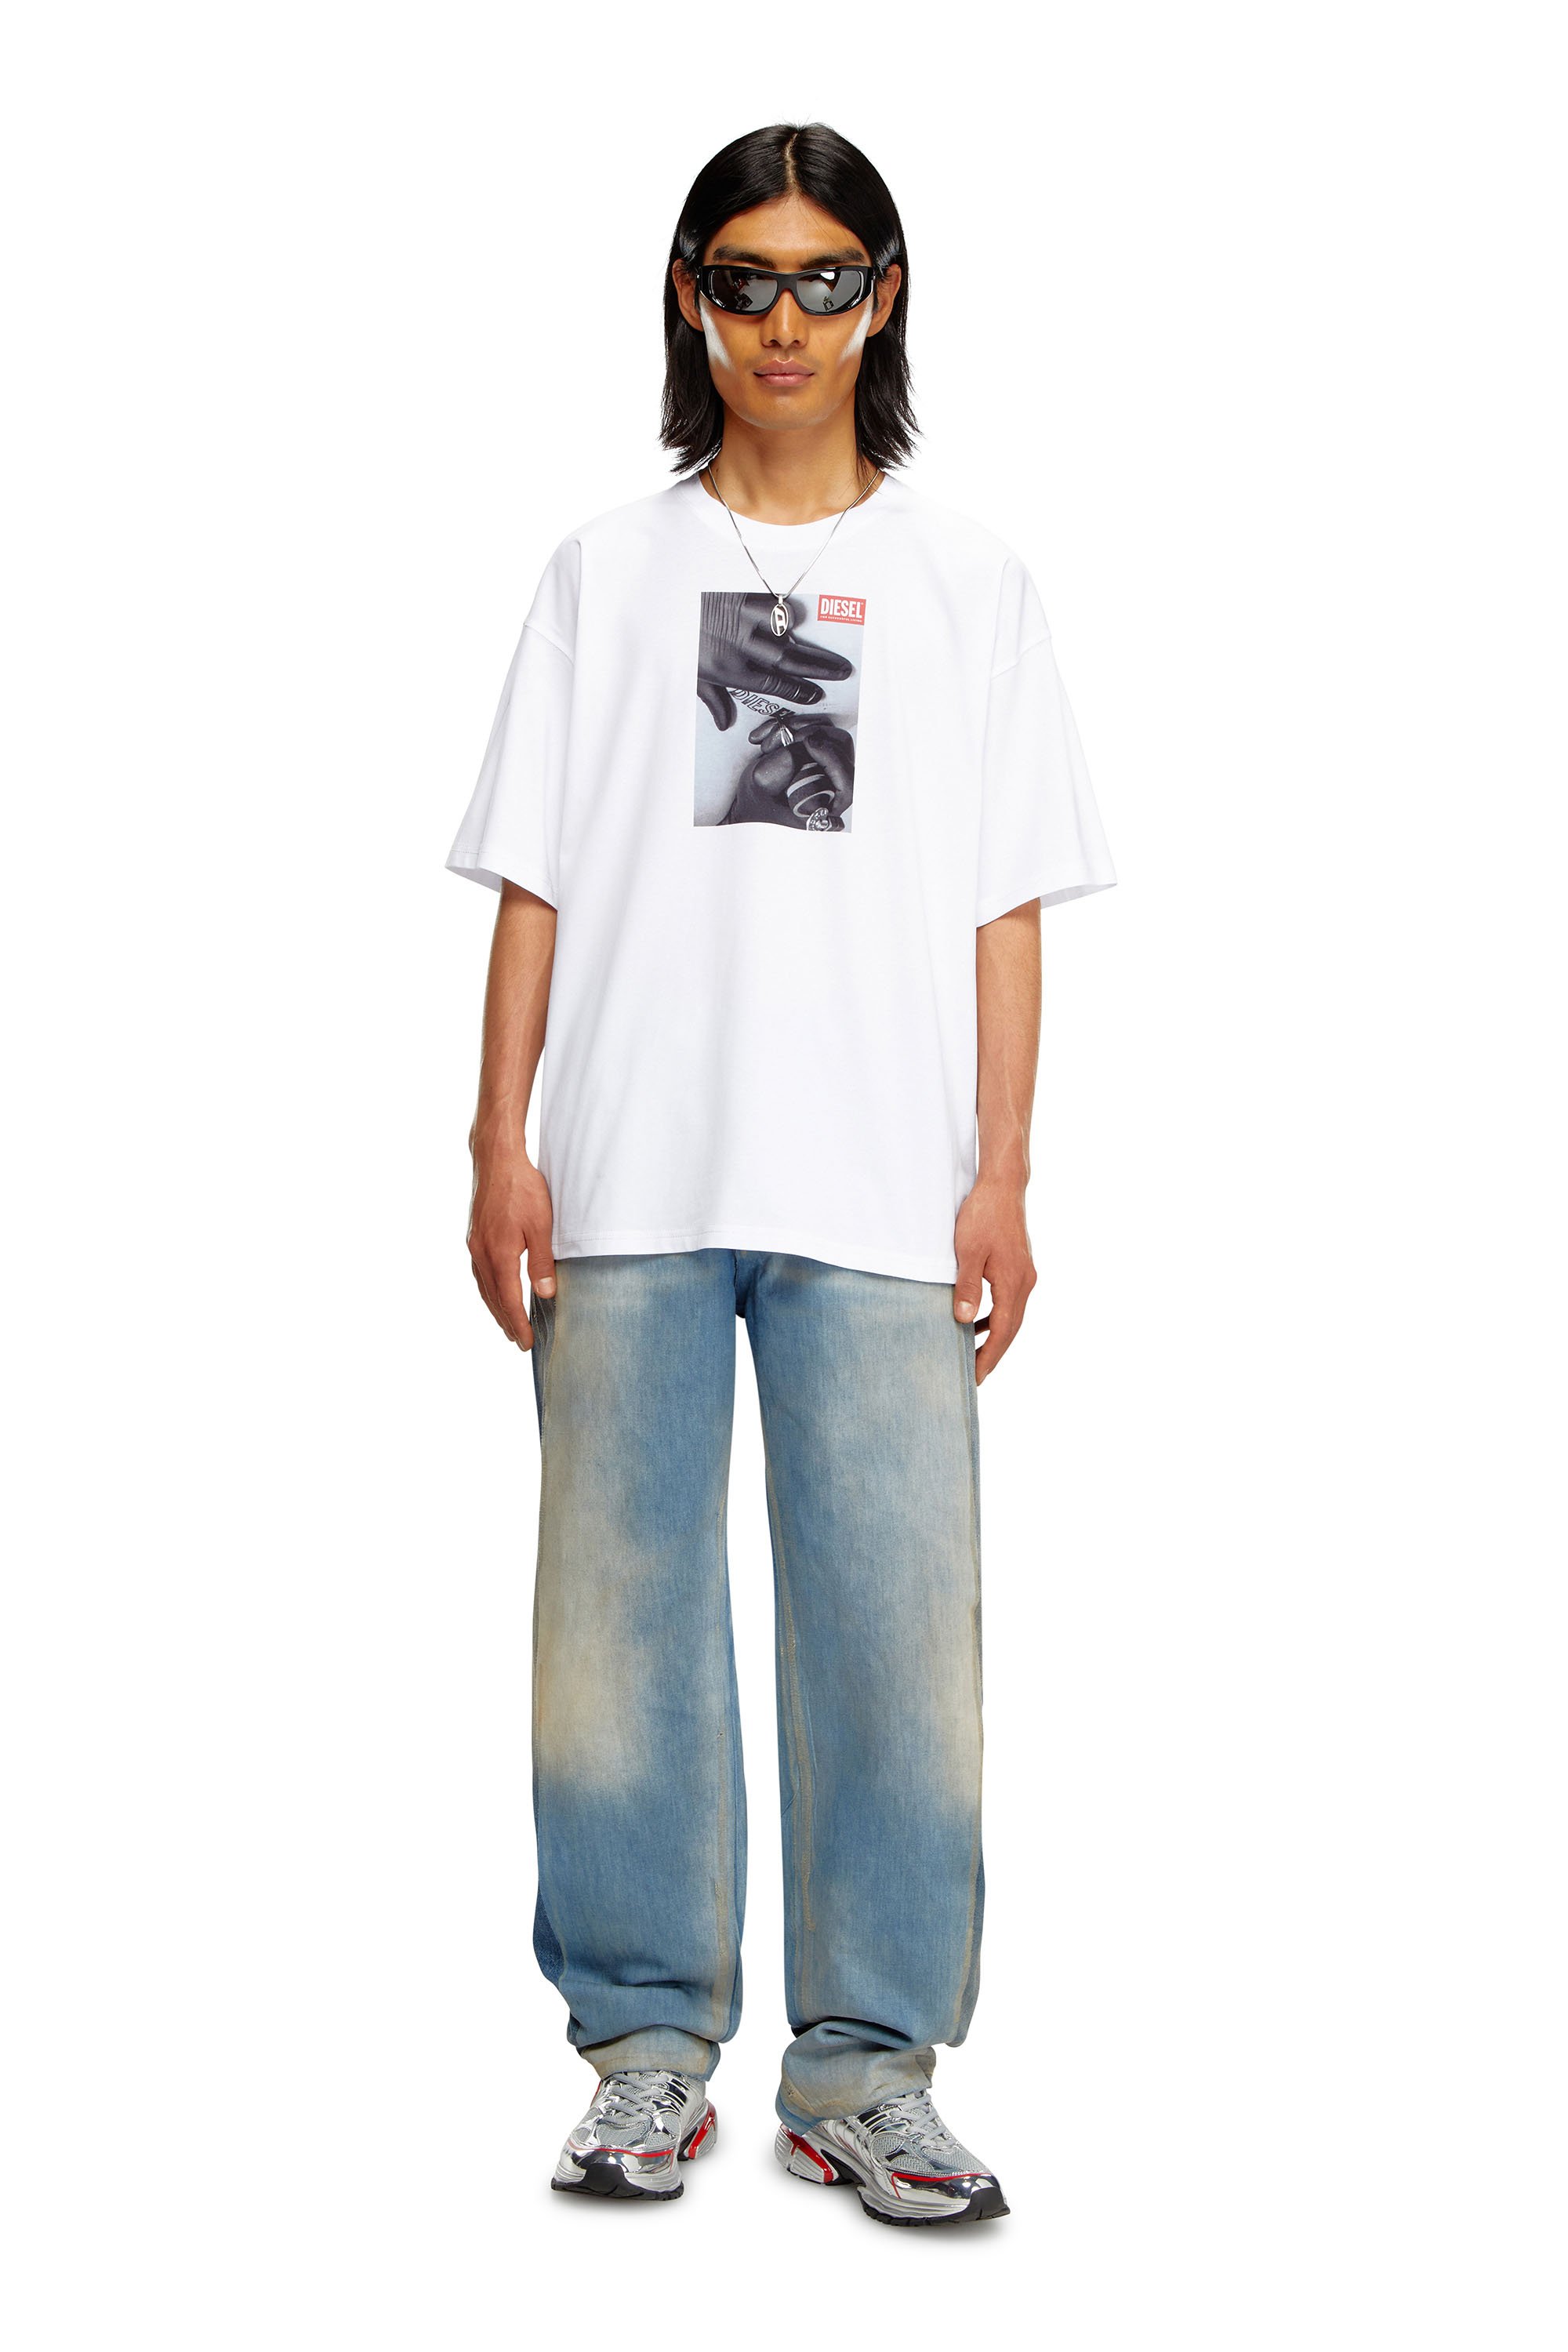 Diesel - T-BOXT-K4, Homme T-shirt avec imprimé tatouage in Blanc - Image 2